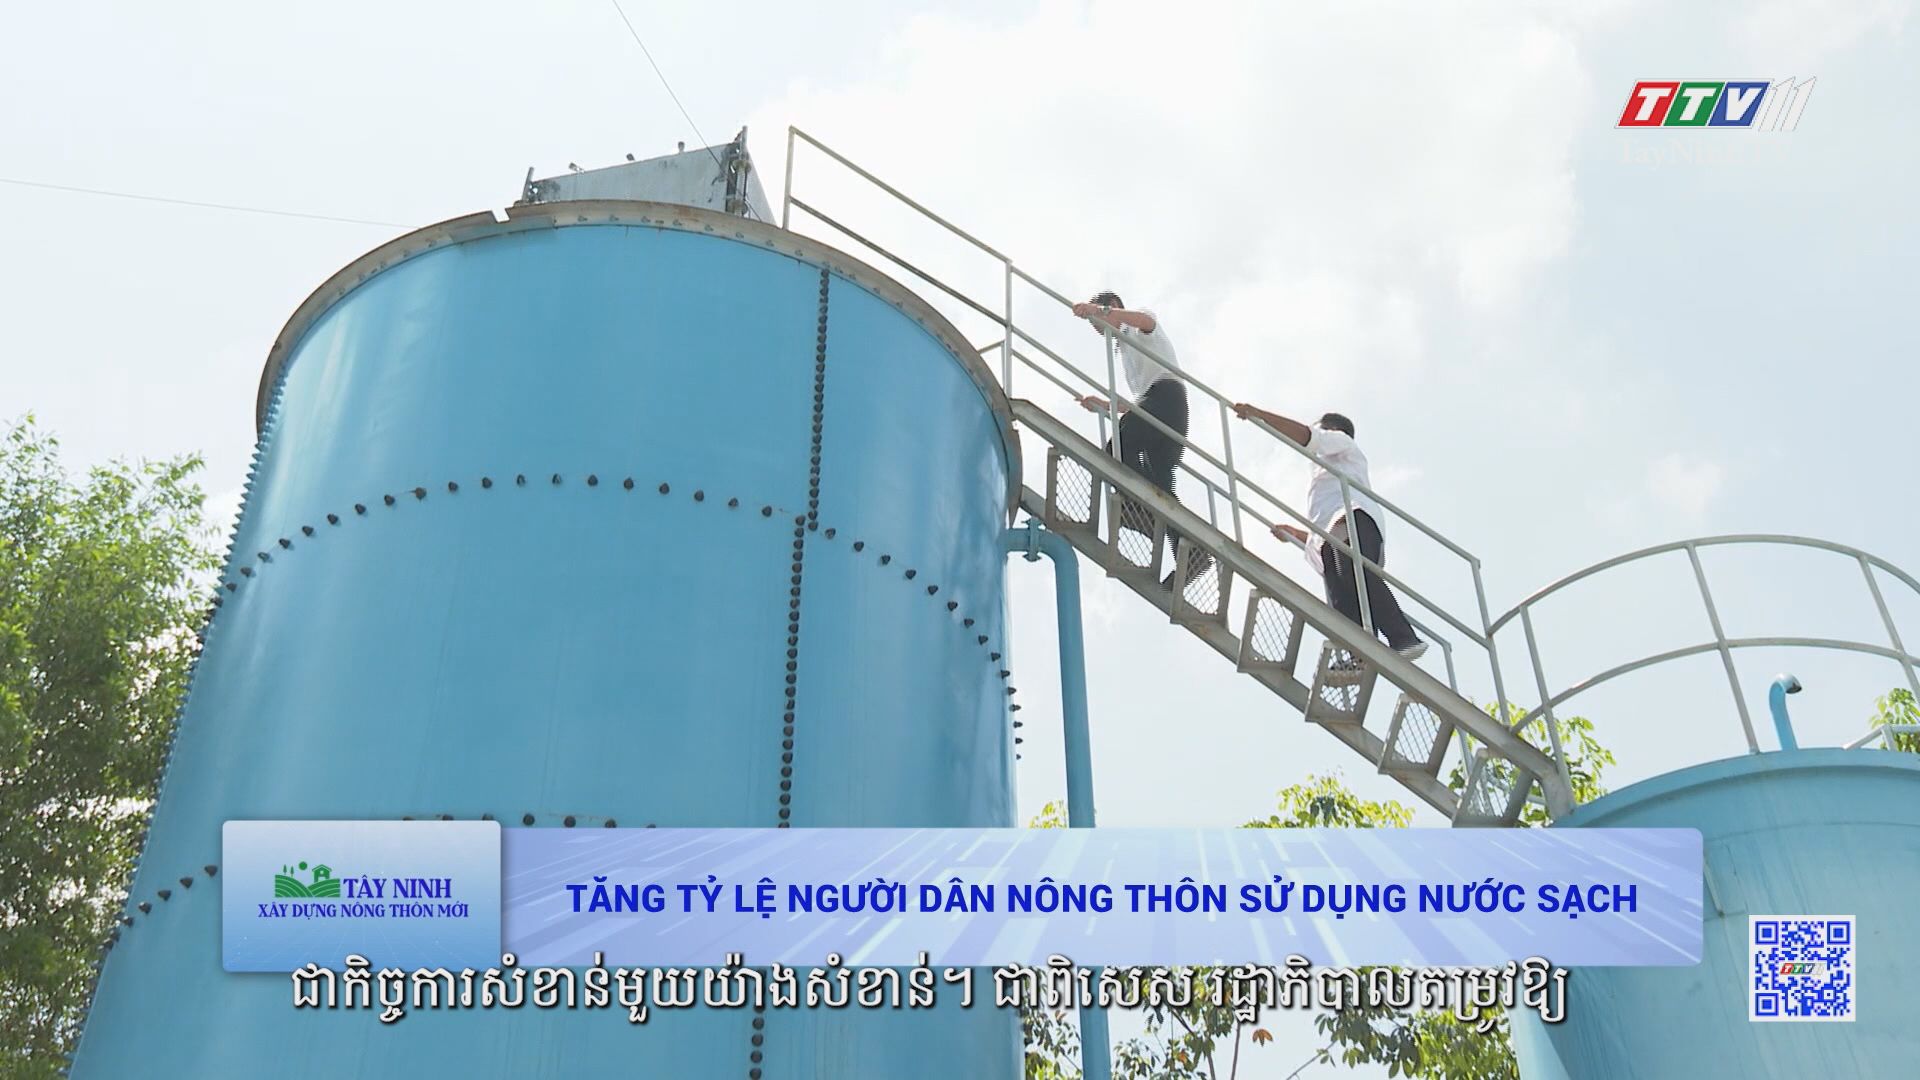 Tăng tỷ lệ người dân nông thôn sử dụng nước sạch | TÂY NINH XÂY DỰNG NÔNG THÔN MỚI | TayNinhTVToday